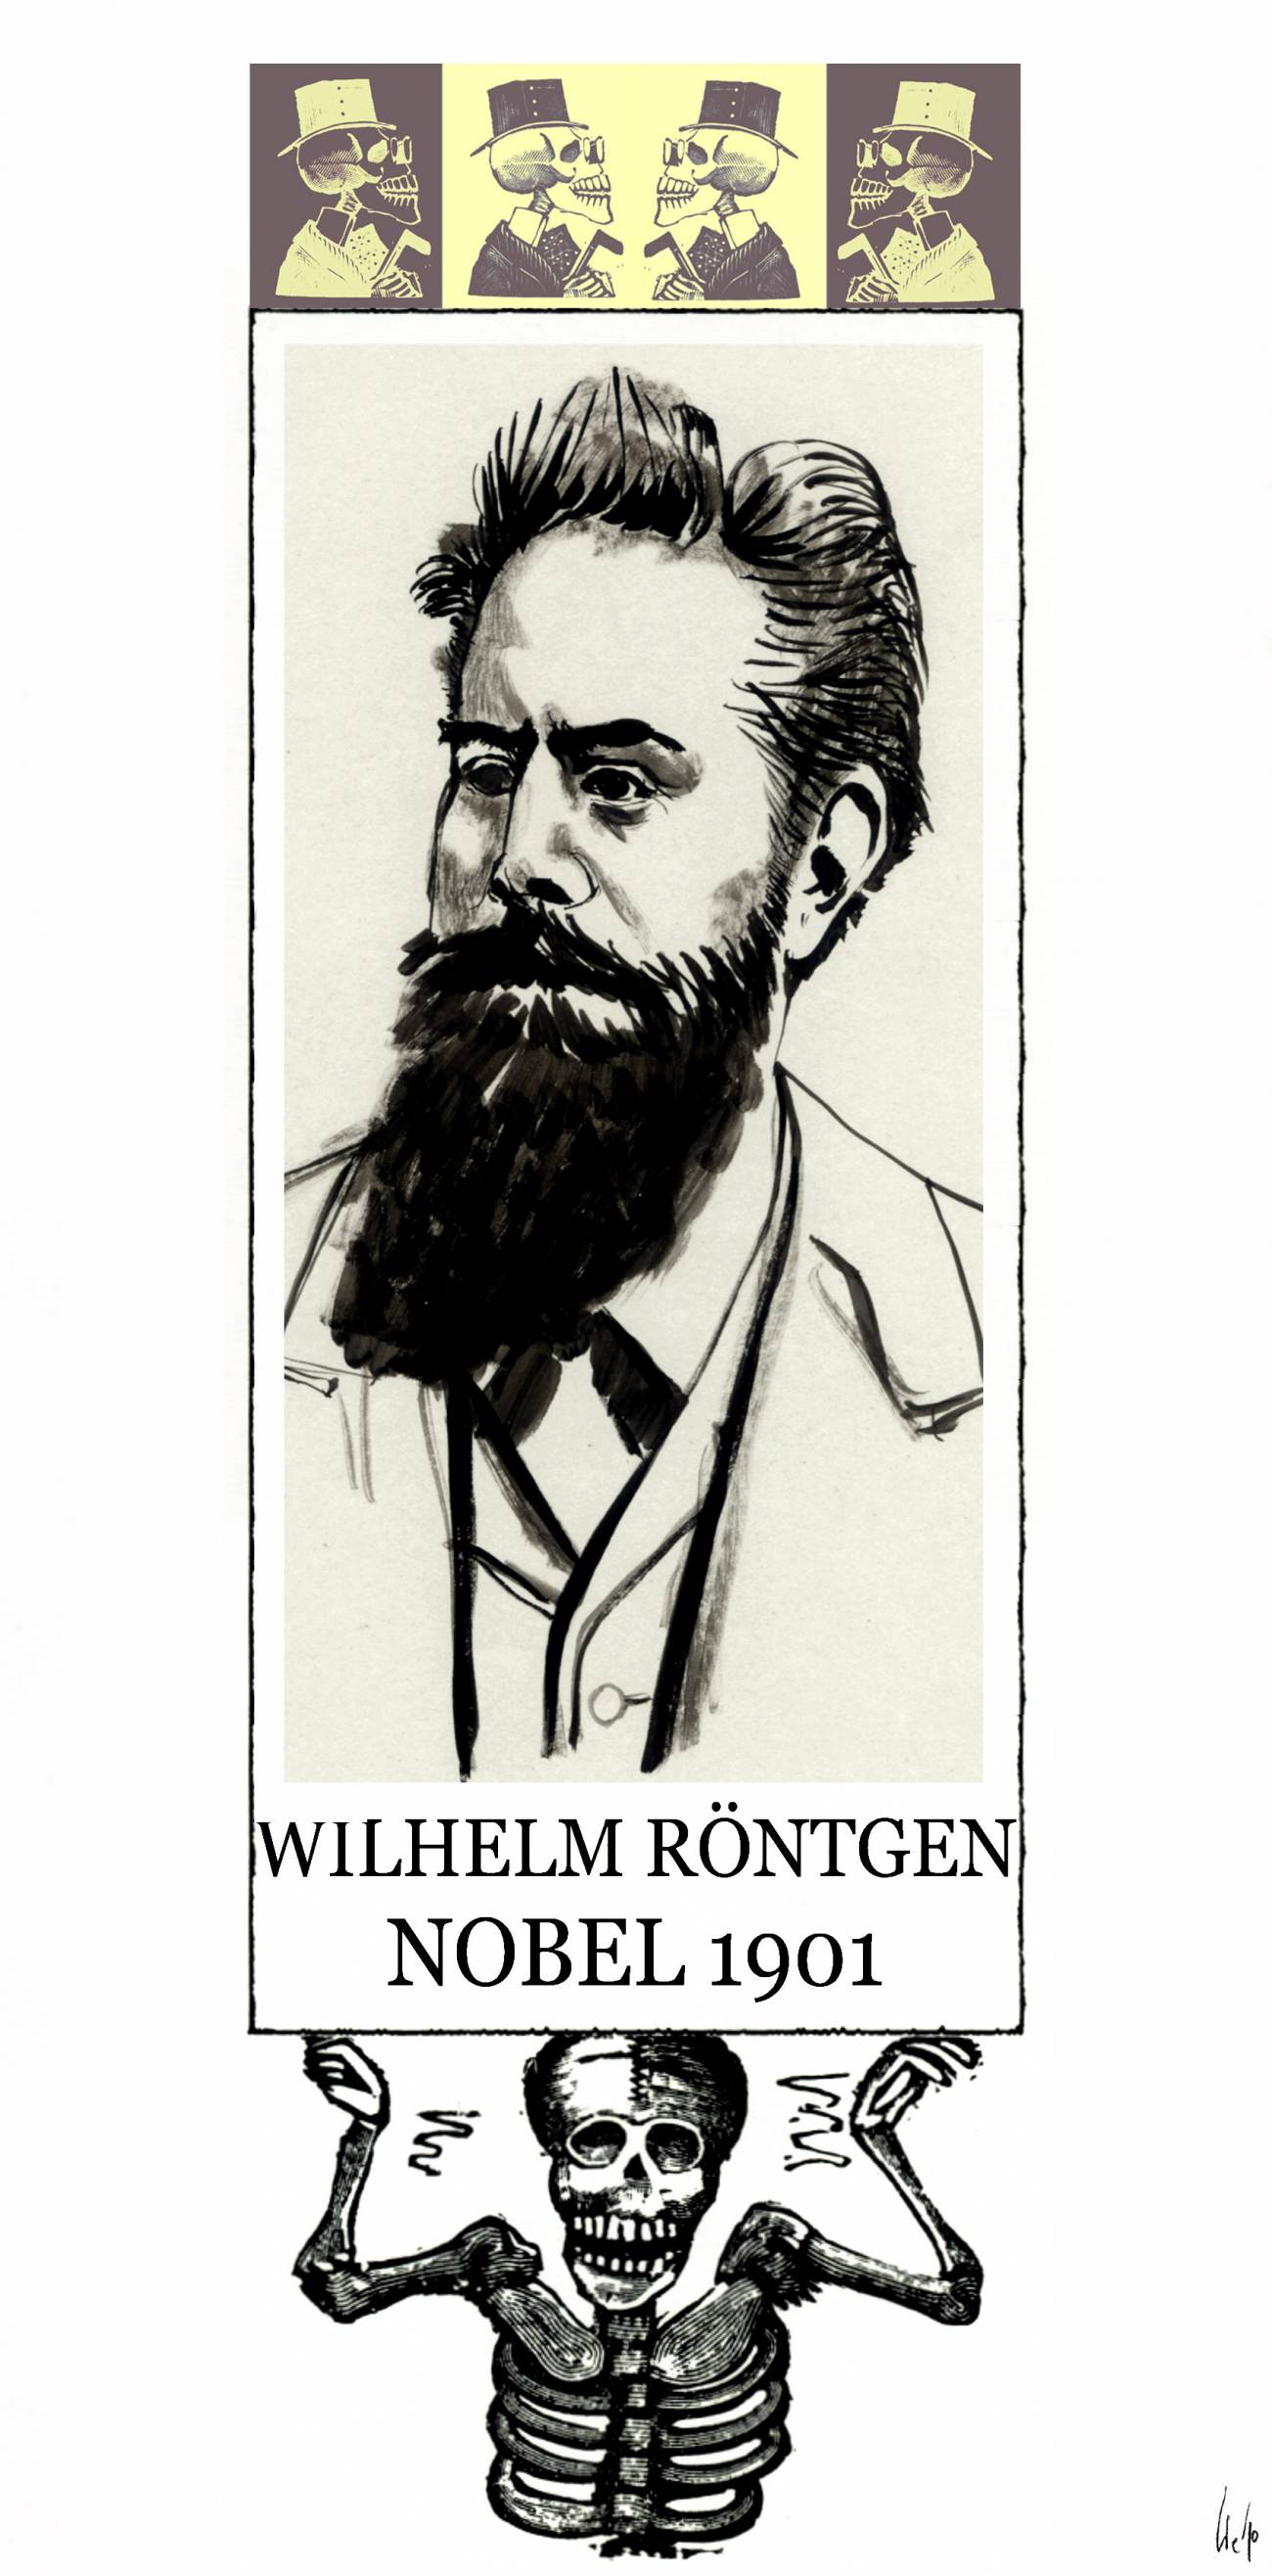 El 10 de febrero de 1923 muere el Premio Nobel de Física Wilhelm Röntgen